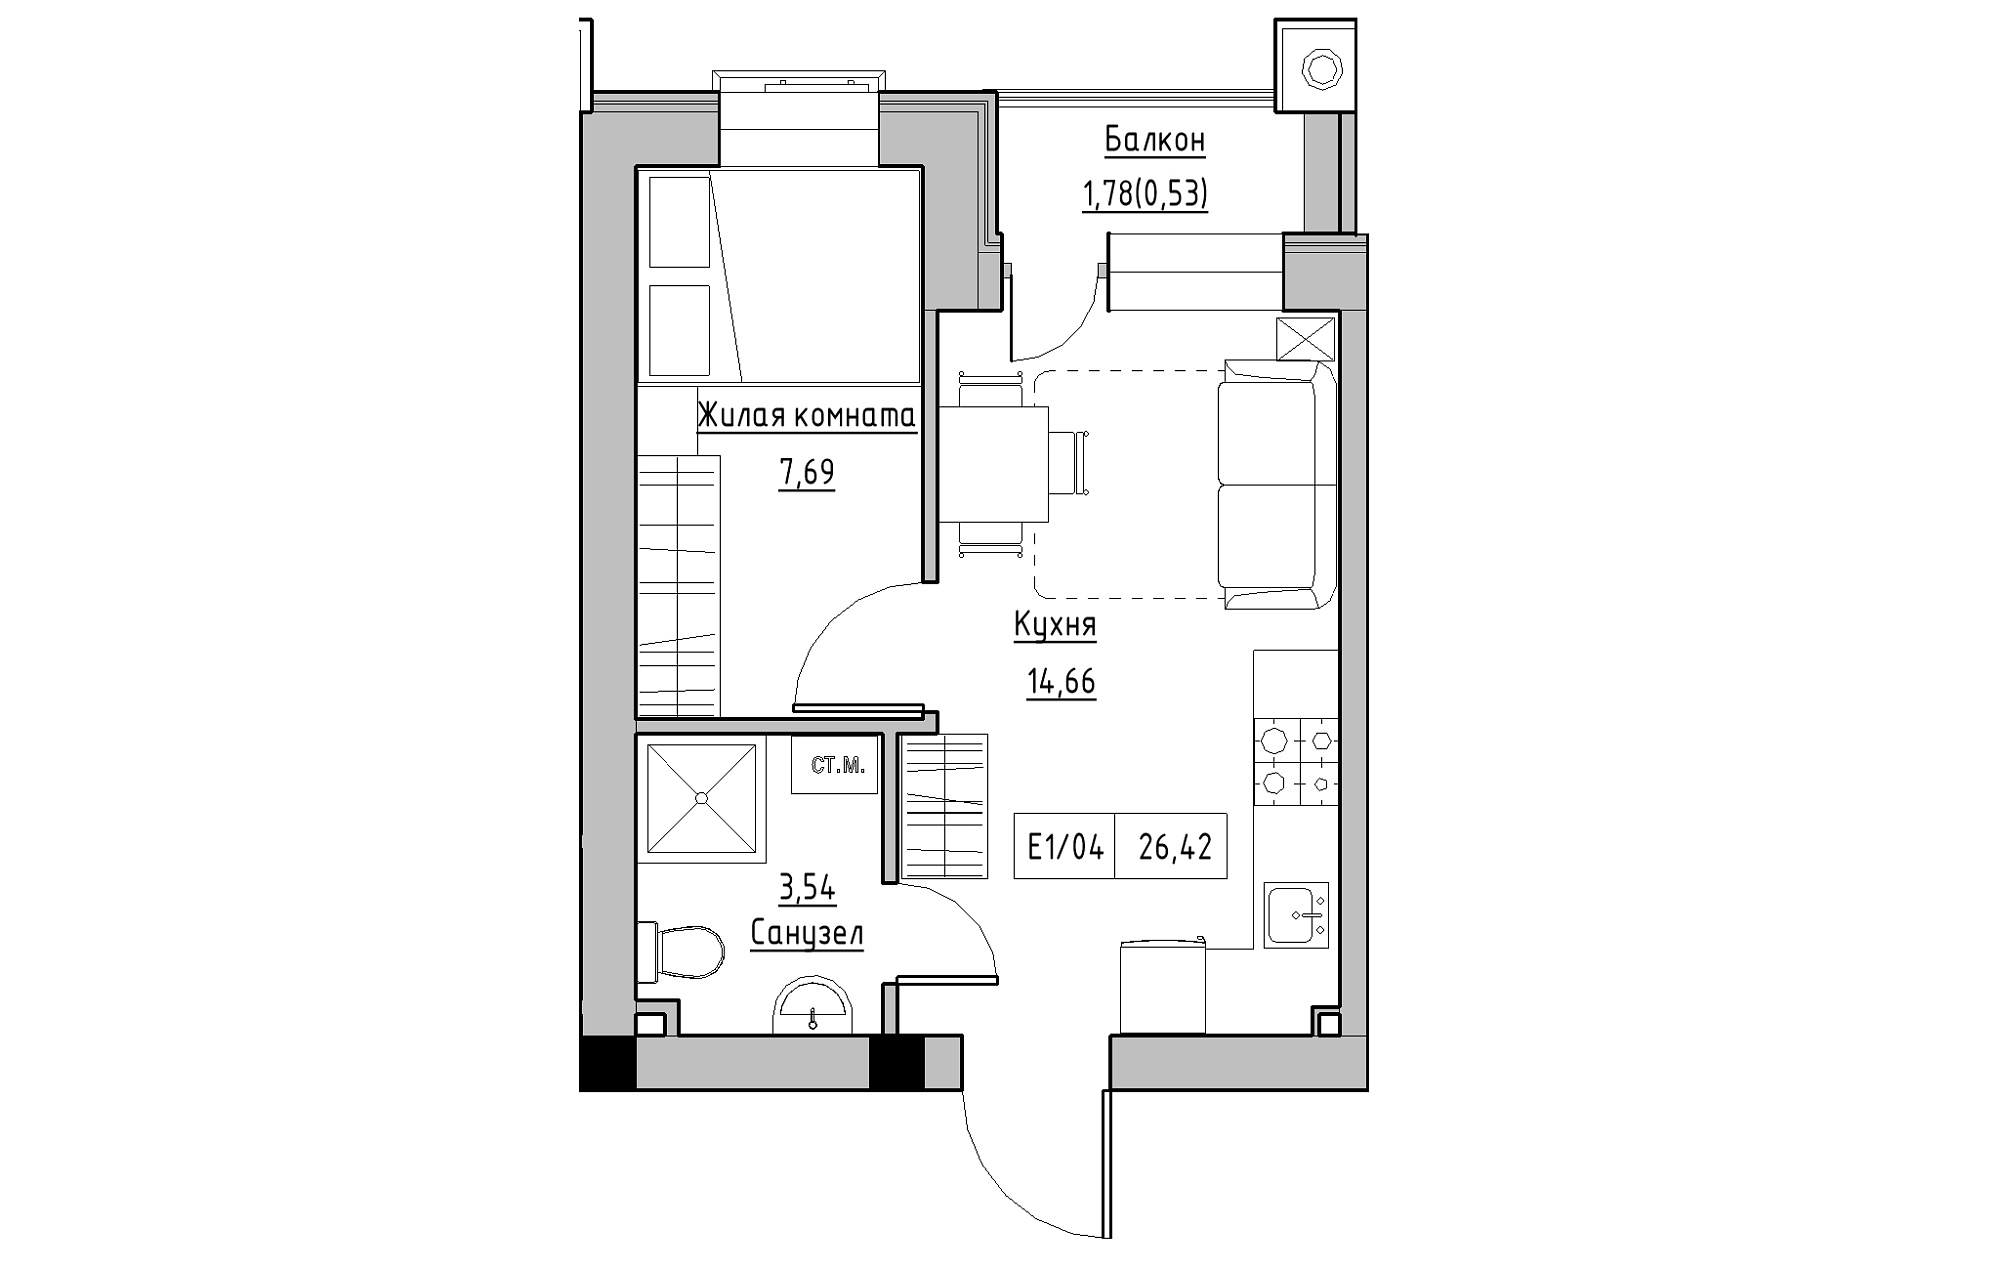 Планування 1-к квартира площею 26.42м2, KS-013-05/0009.